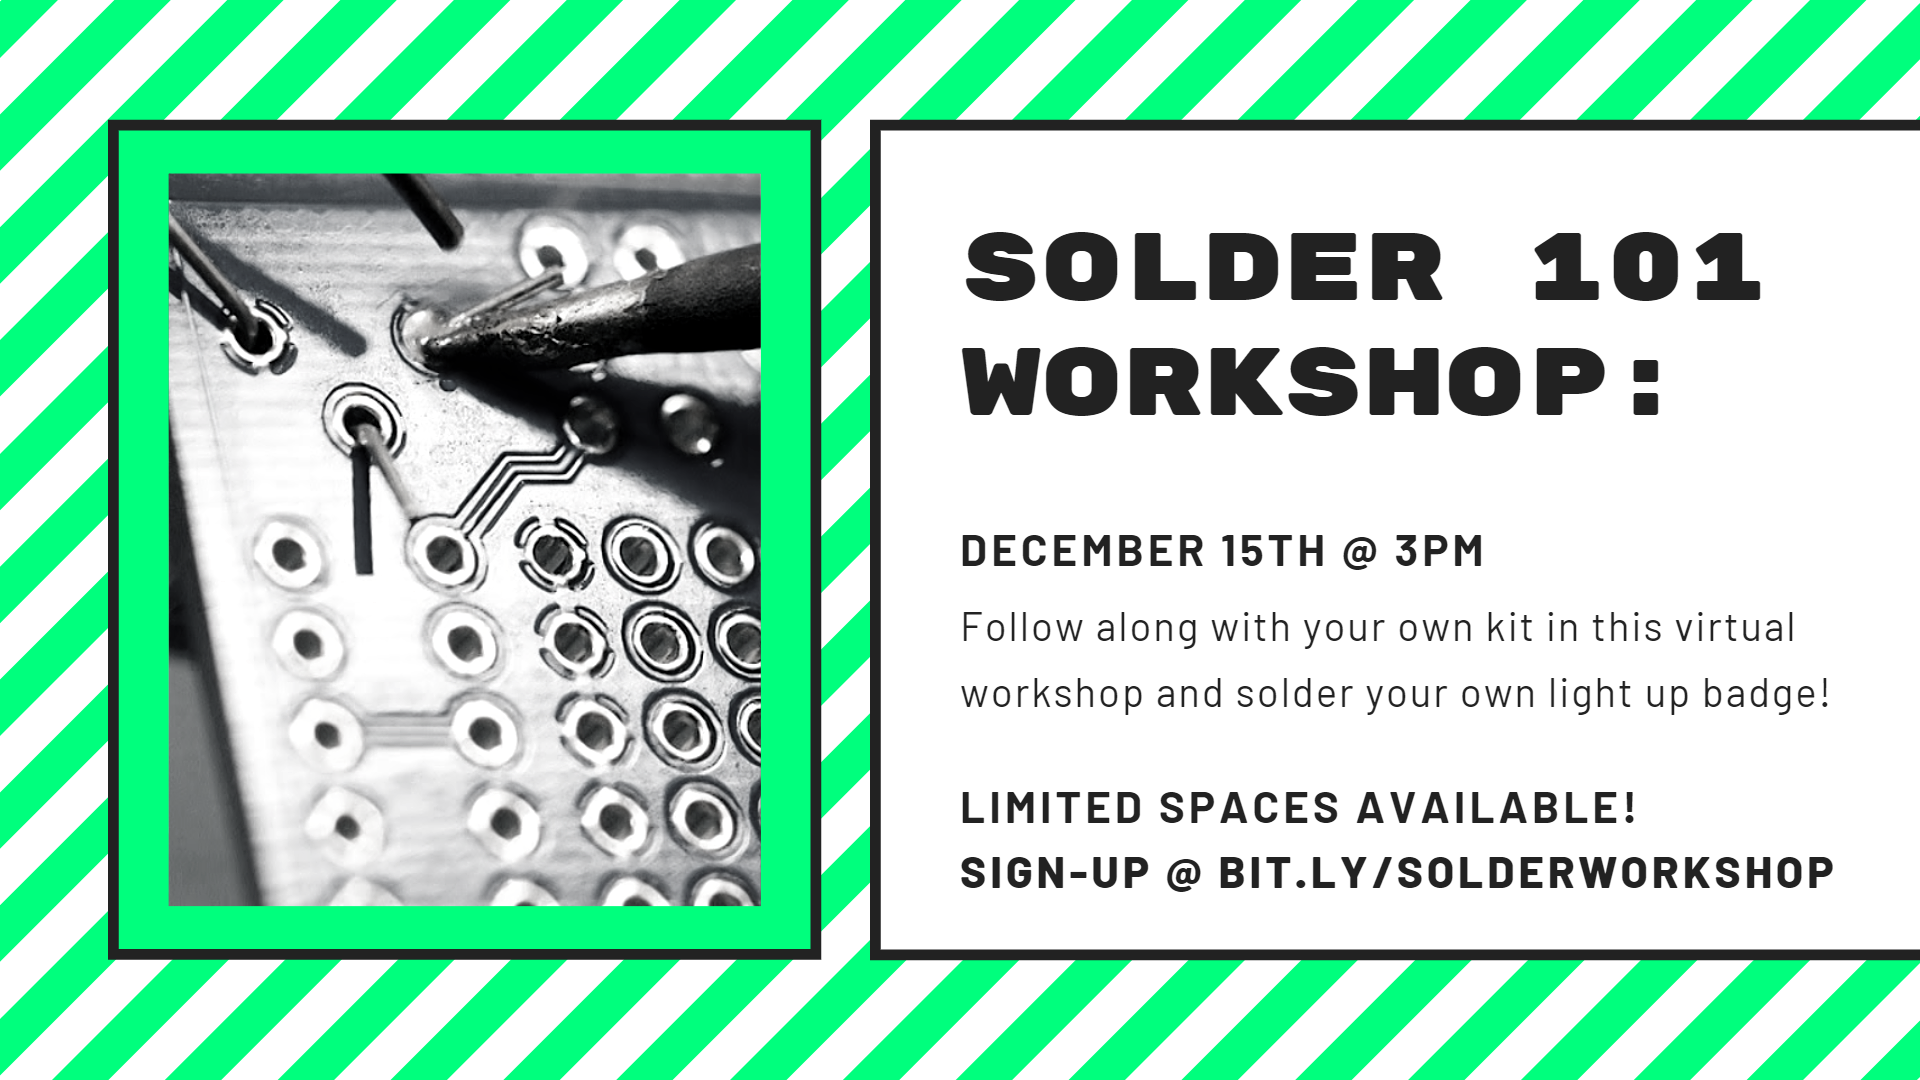 Solder 101 Workshop: Signup